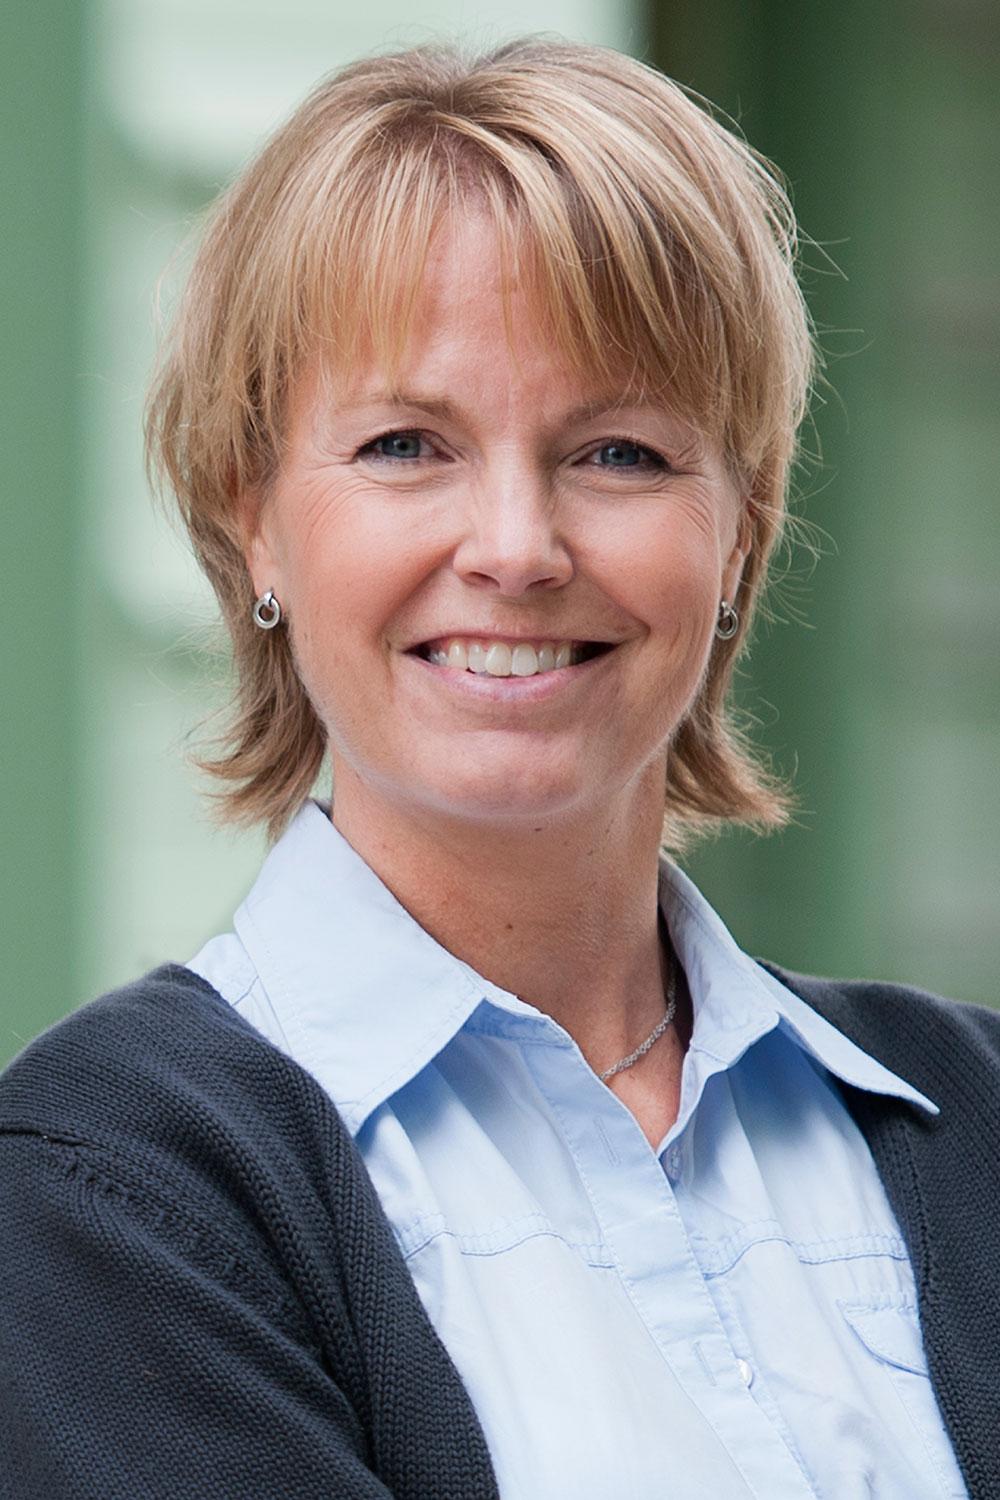 Professor Christina Rudén